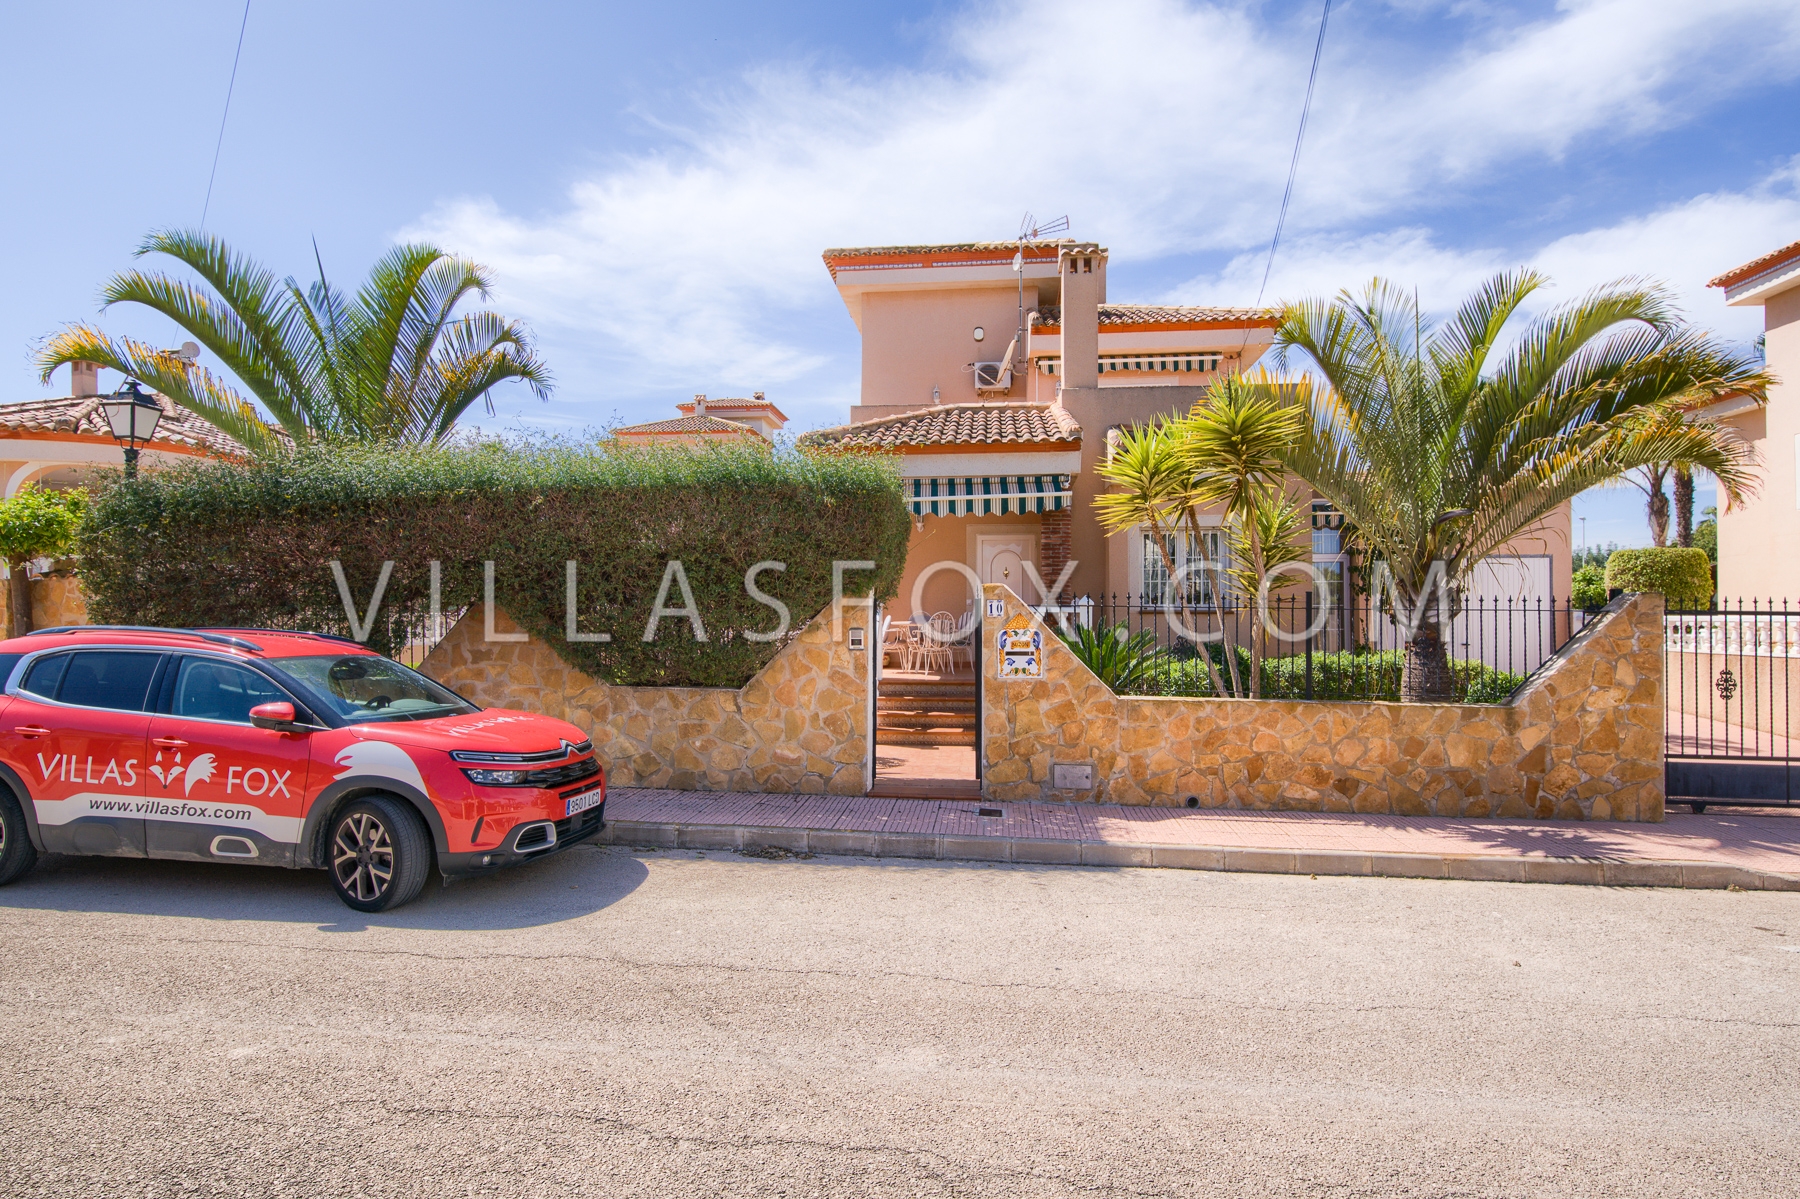 RESERVED!  Torrestrella villa for sale, 3 bedrooms, private pool, garage